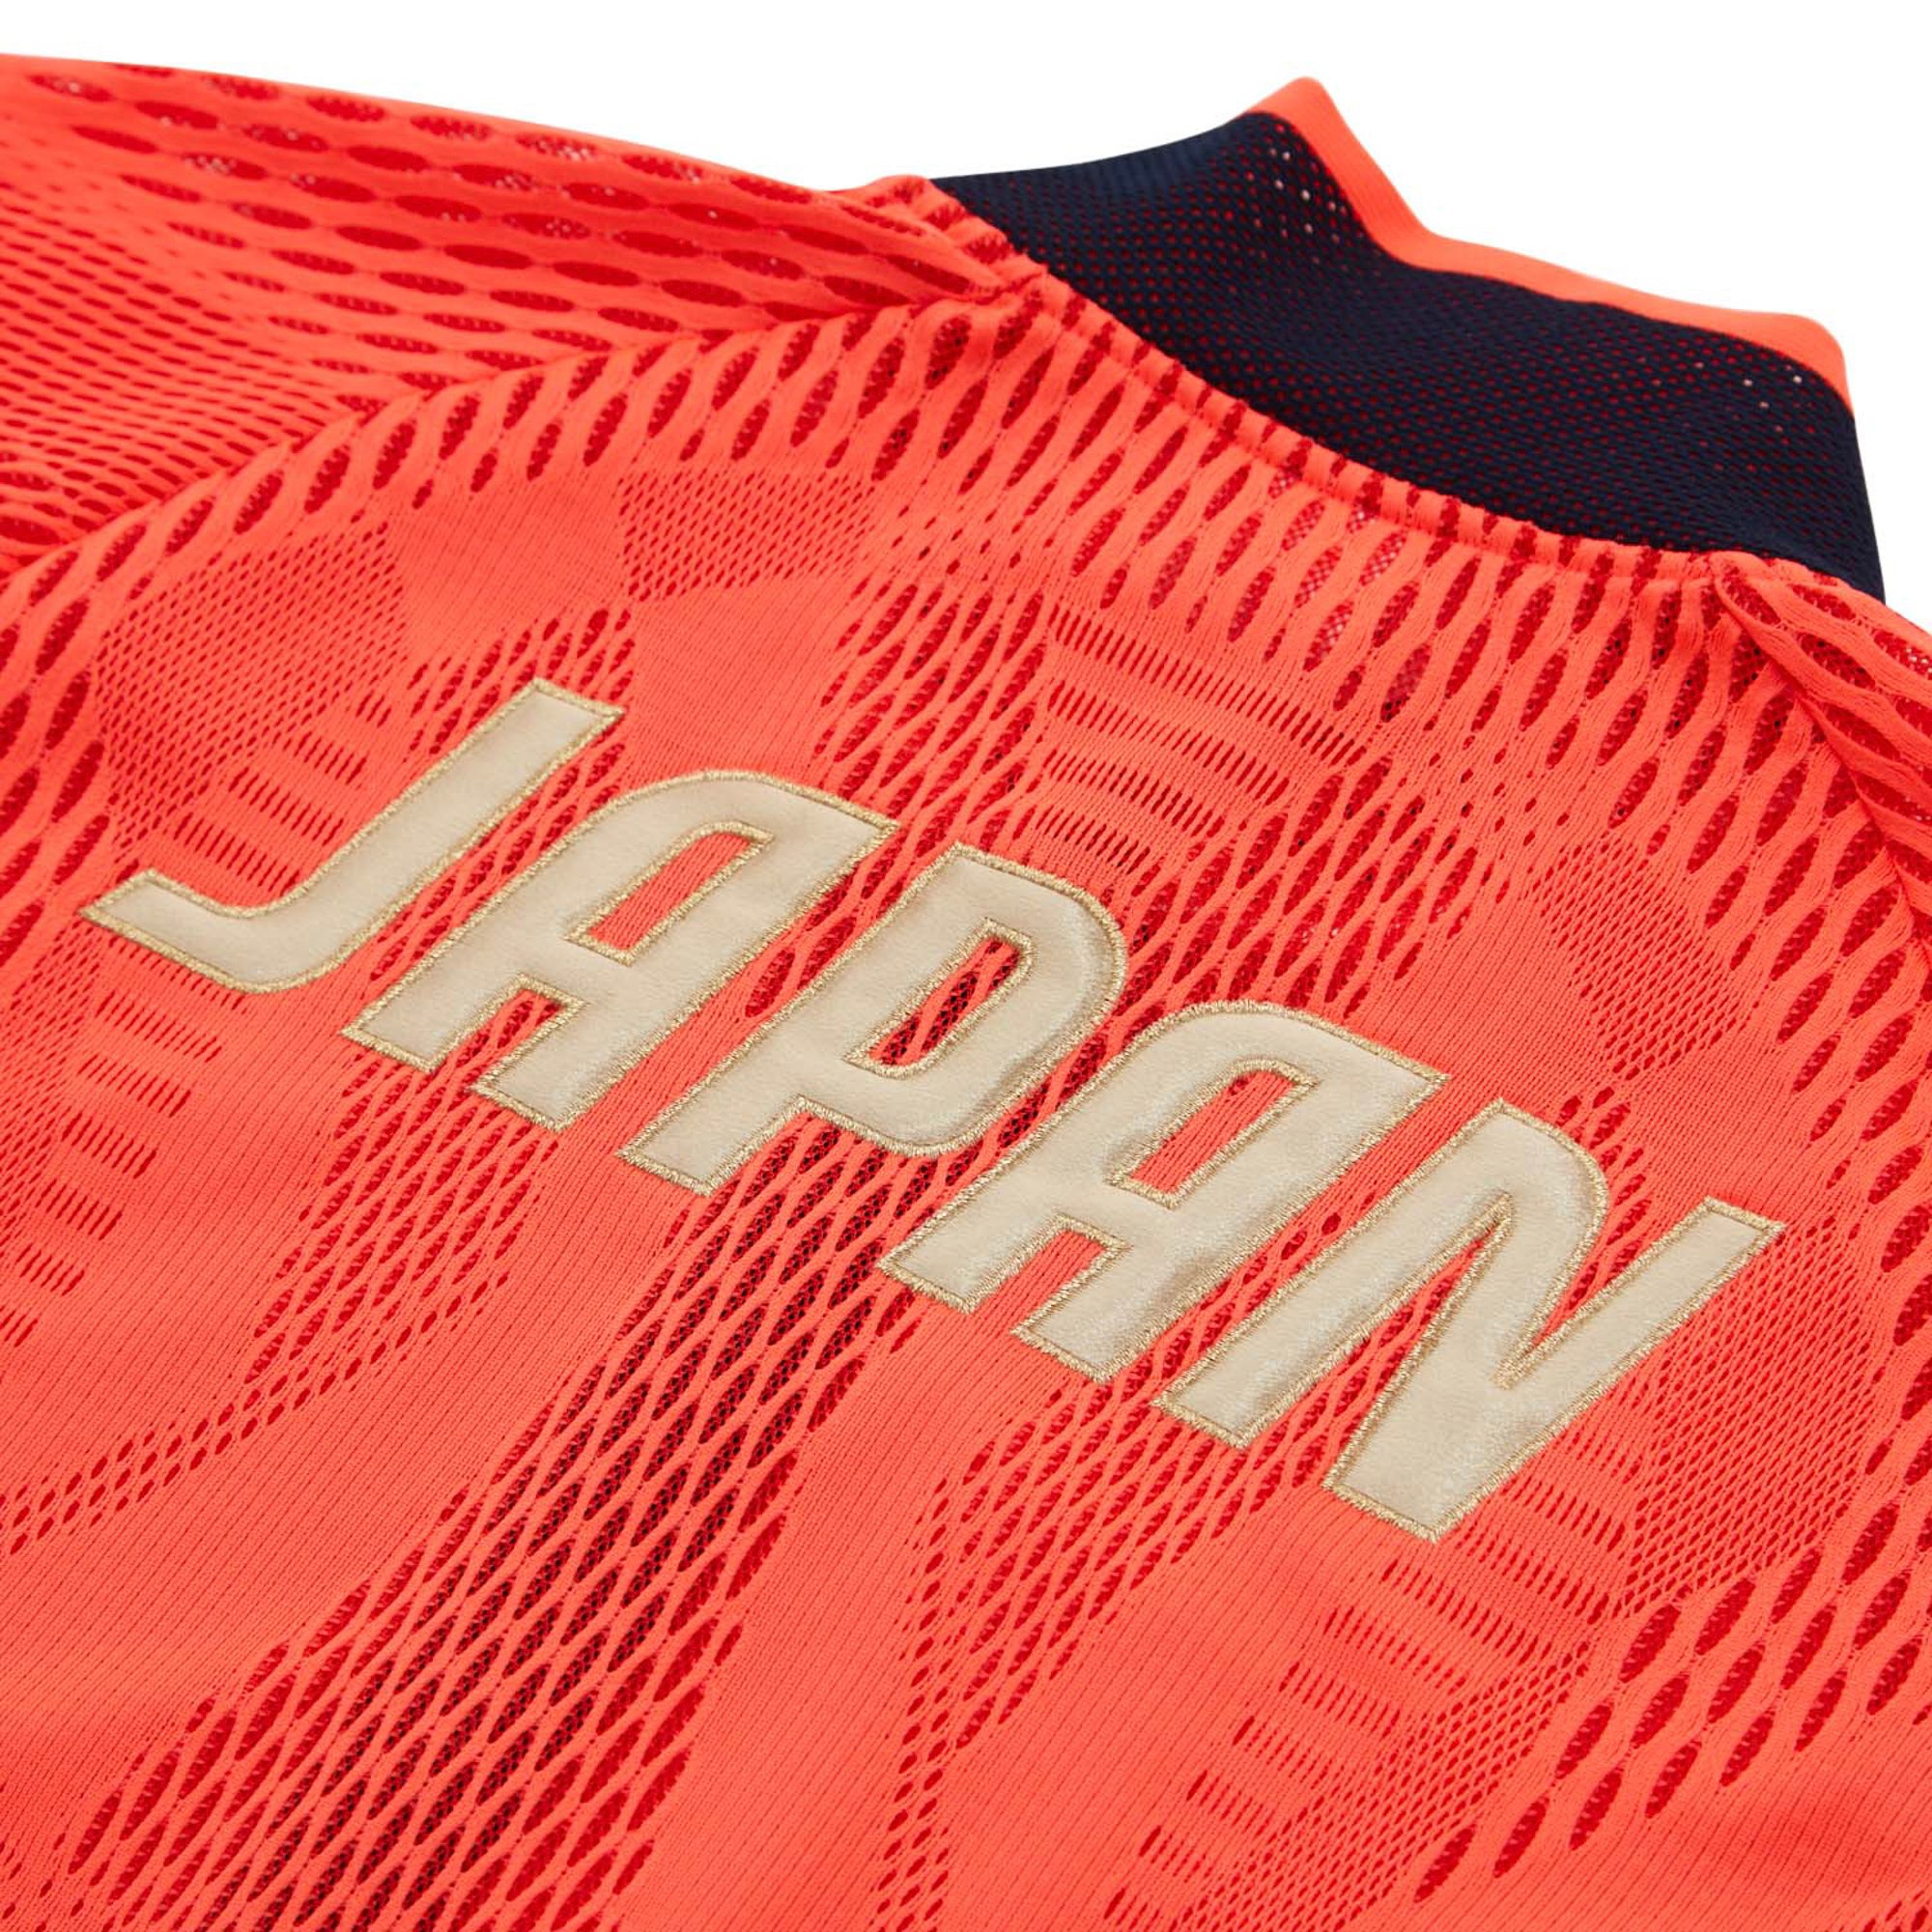 アシックス、日本選手団が着用している「ポディウムジャケット」の 